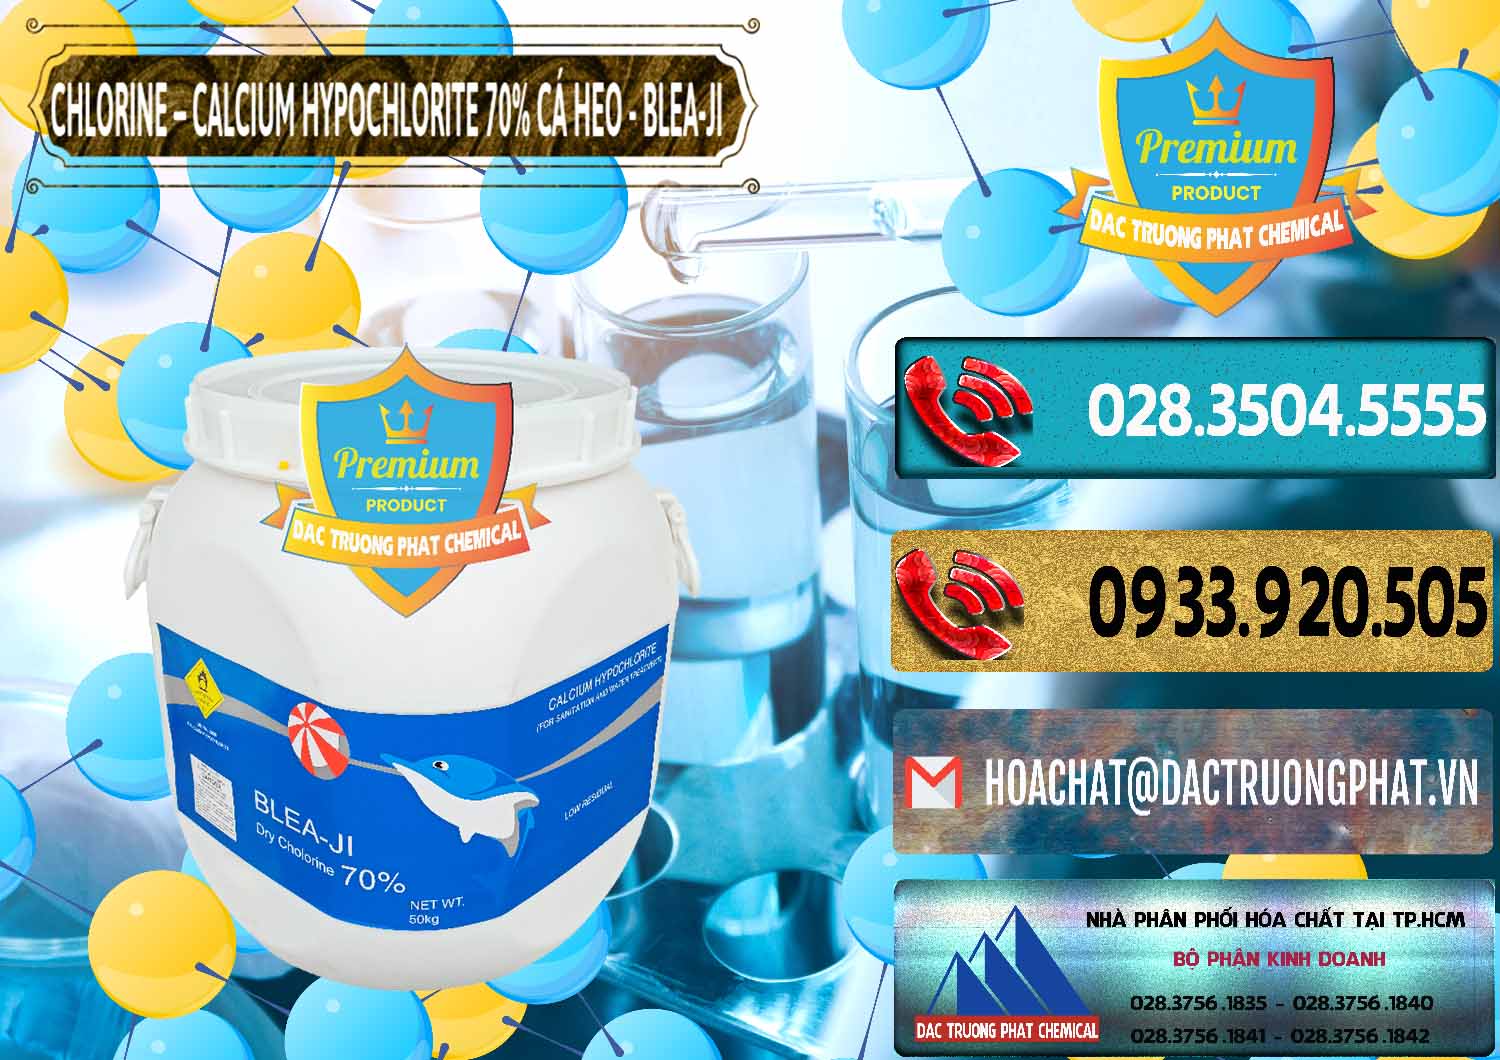 Nơi chuyên kinh doanh & bán Clorin - Chlorine Cá Heo 70% Blea-Ji Trung Quốc China - 0056 - Đơn vị nhập khẩu _ cung cấp hóa chất tại TP.HCM - hoachatdetnhuom.com